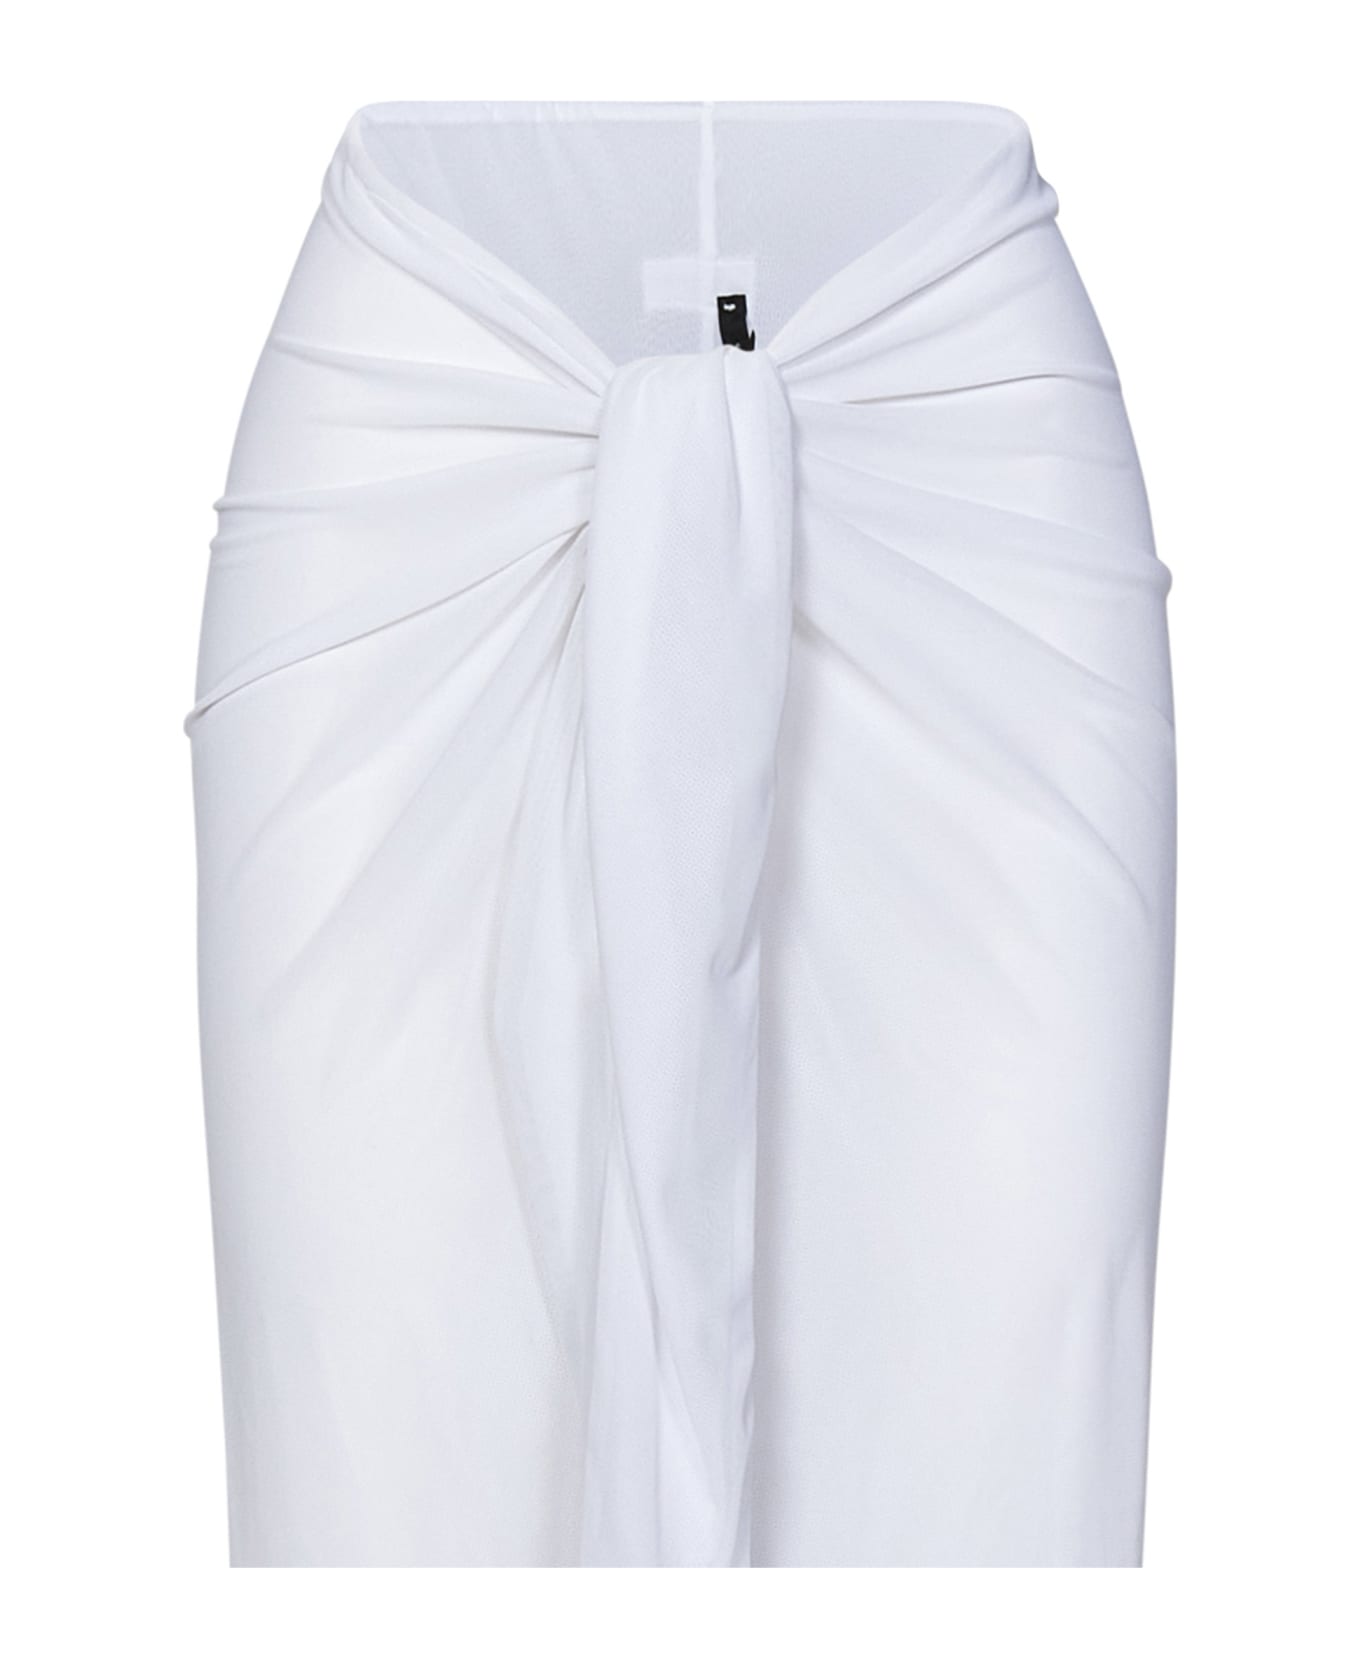 Fisico - Cristina Ferrari Fisico Skirt - White